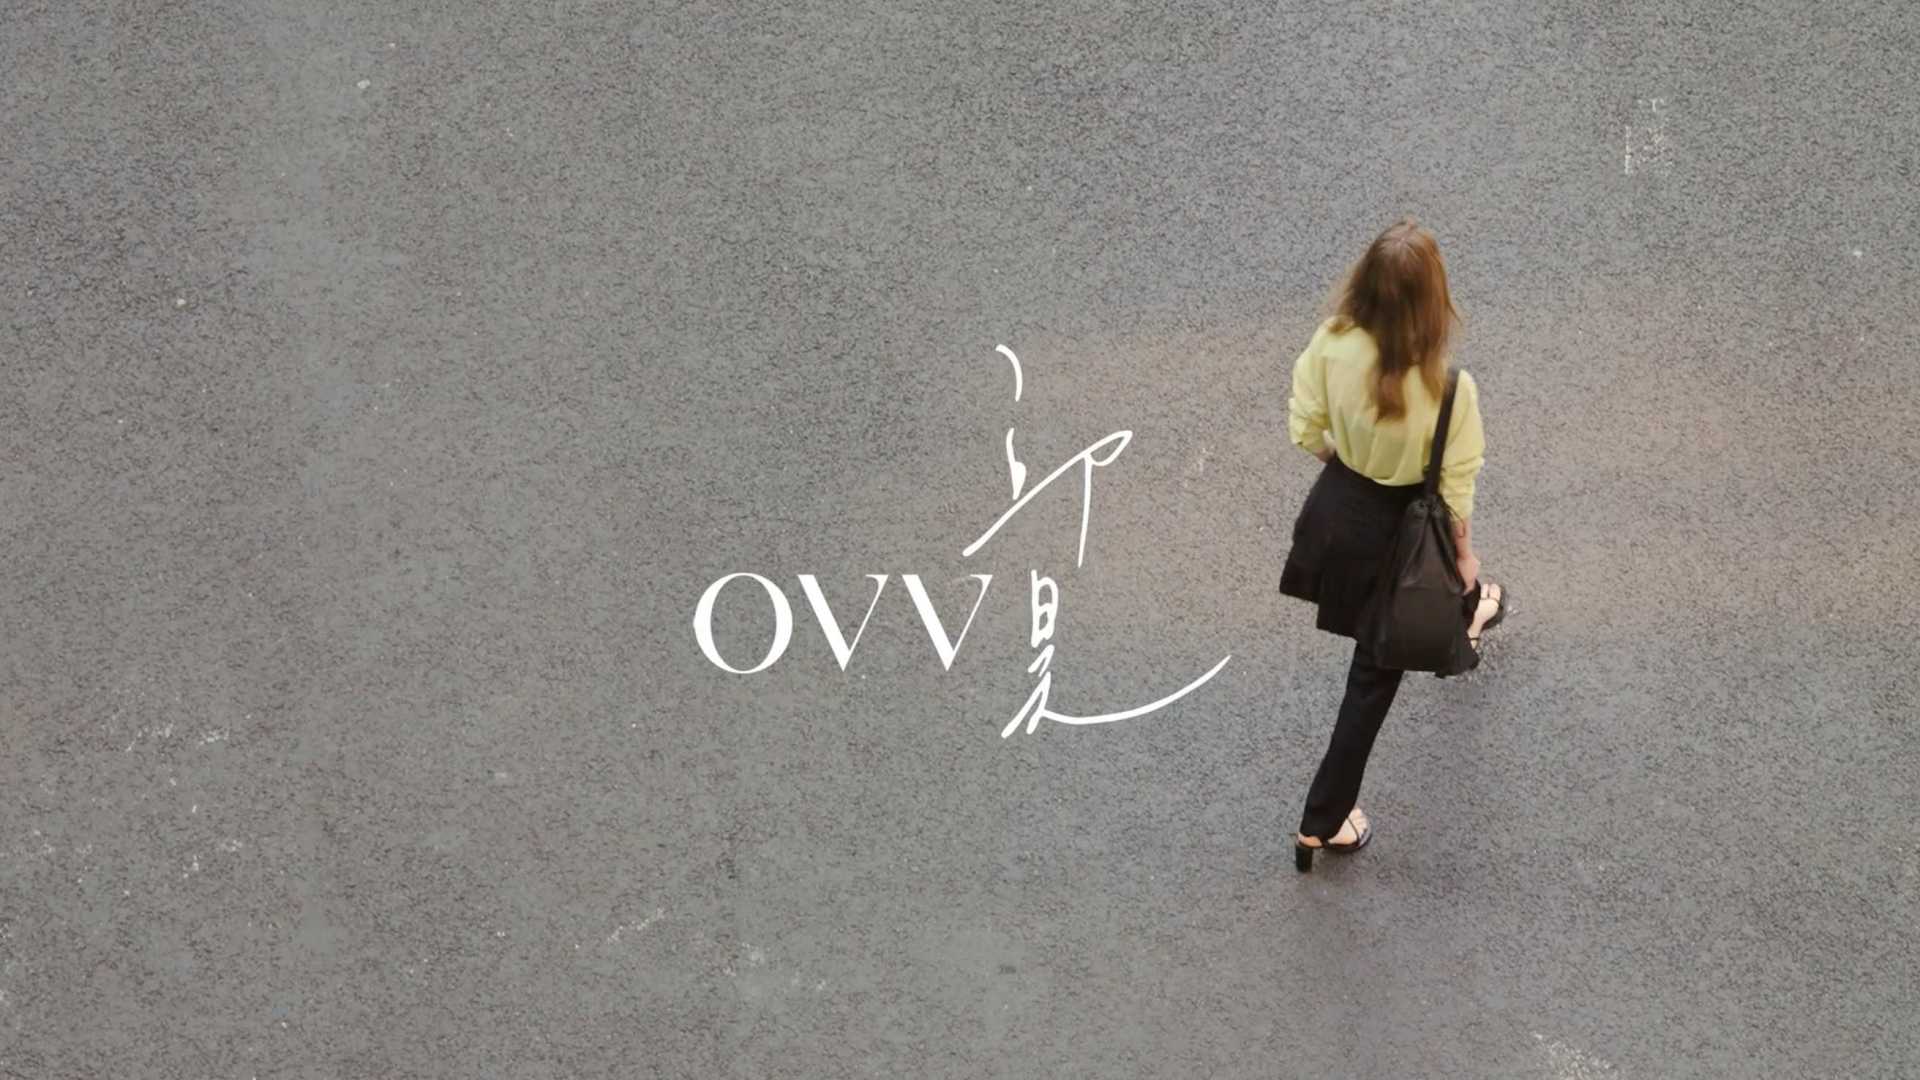 OVV x 邱昊 联名系列 乐观的创造力